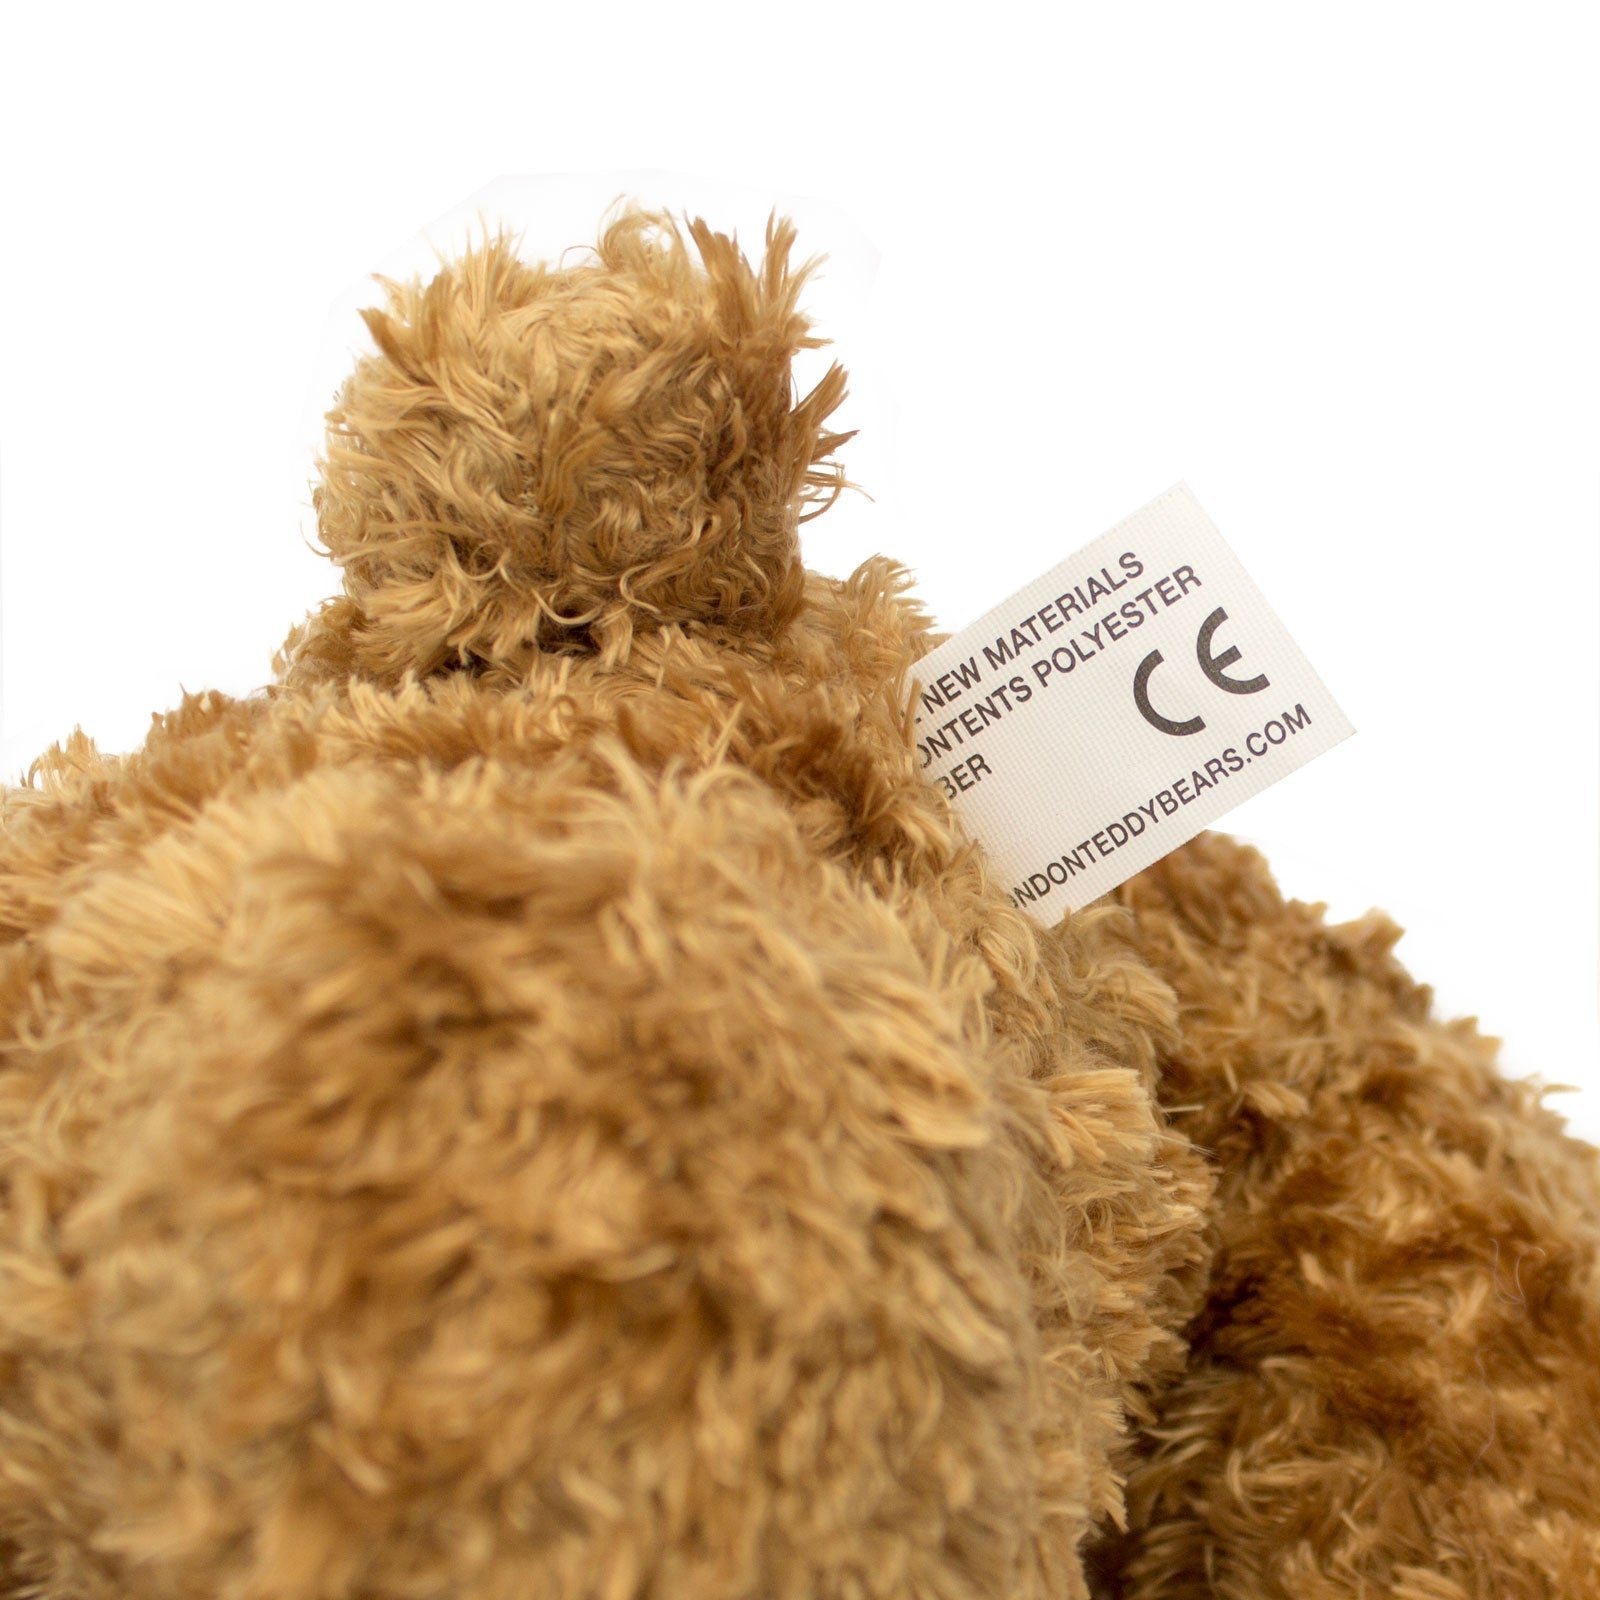 The Greatest Fiscal Quarter Ever - Teddy Bear